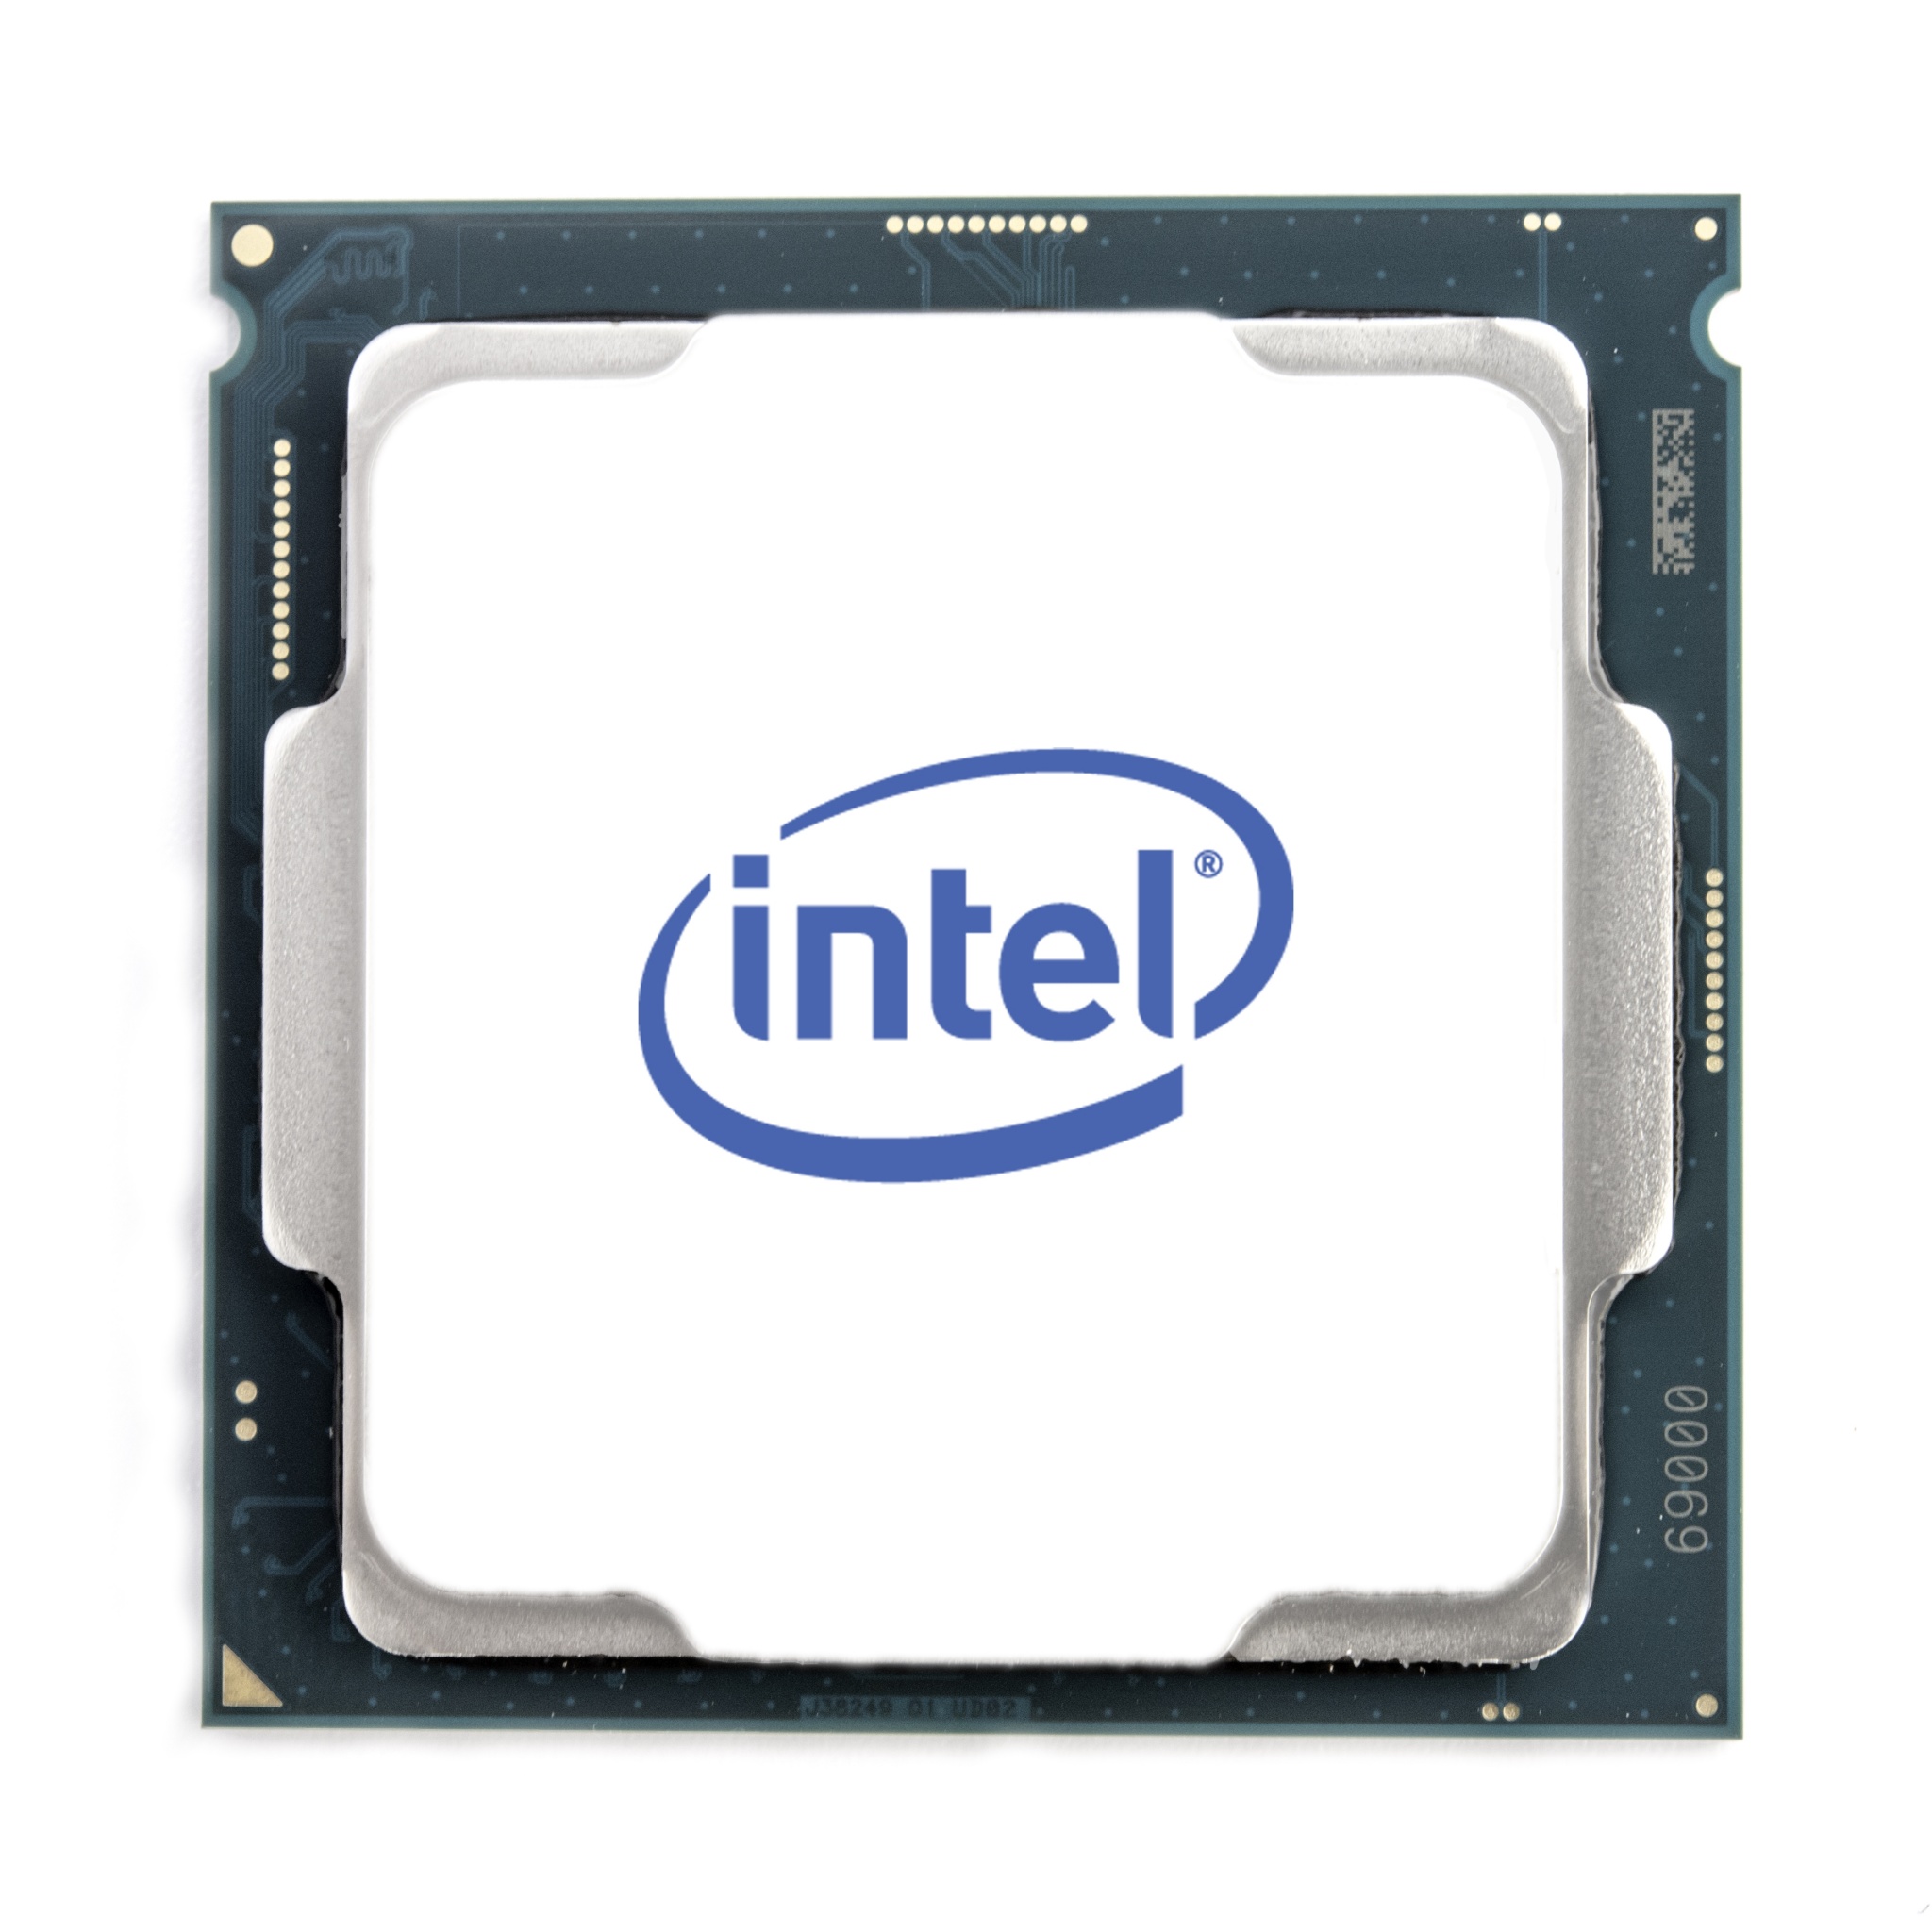 intel Core i7-9700 - rehda.com